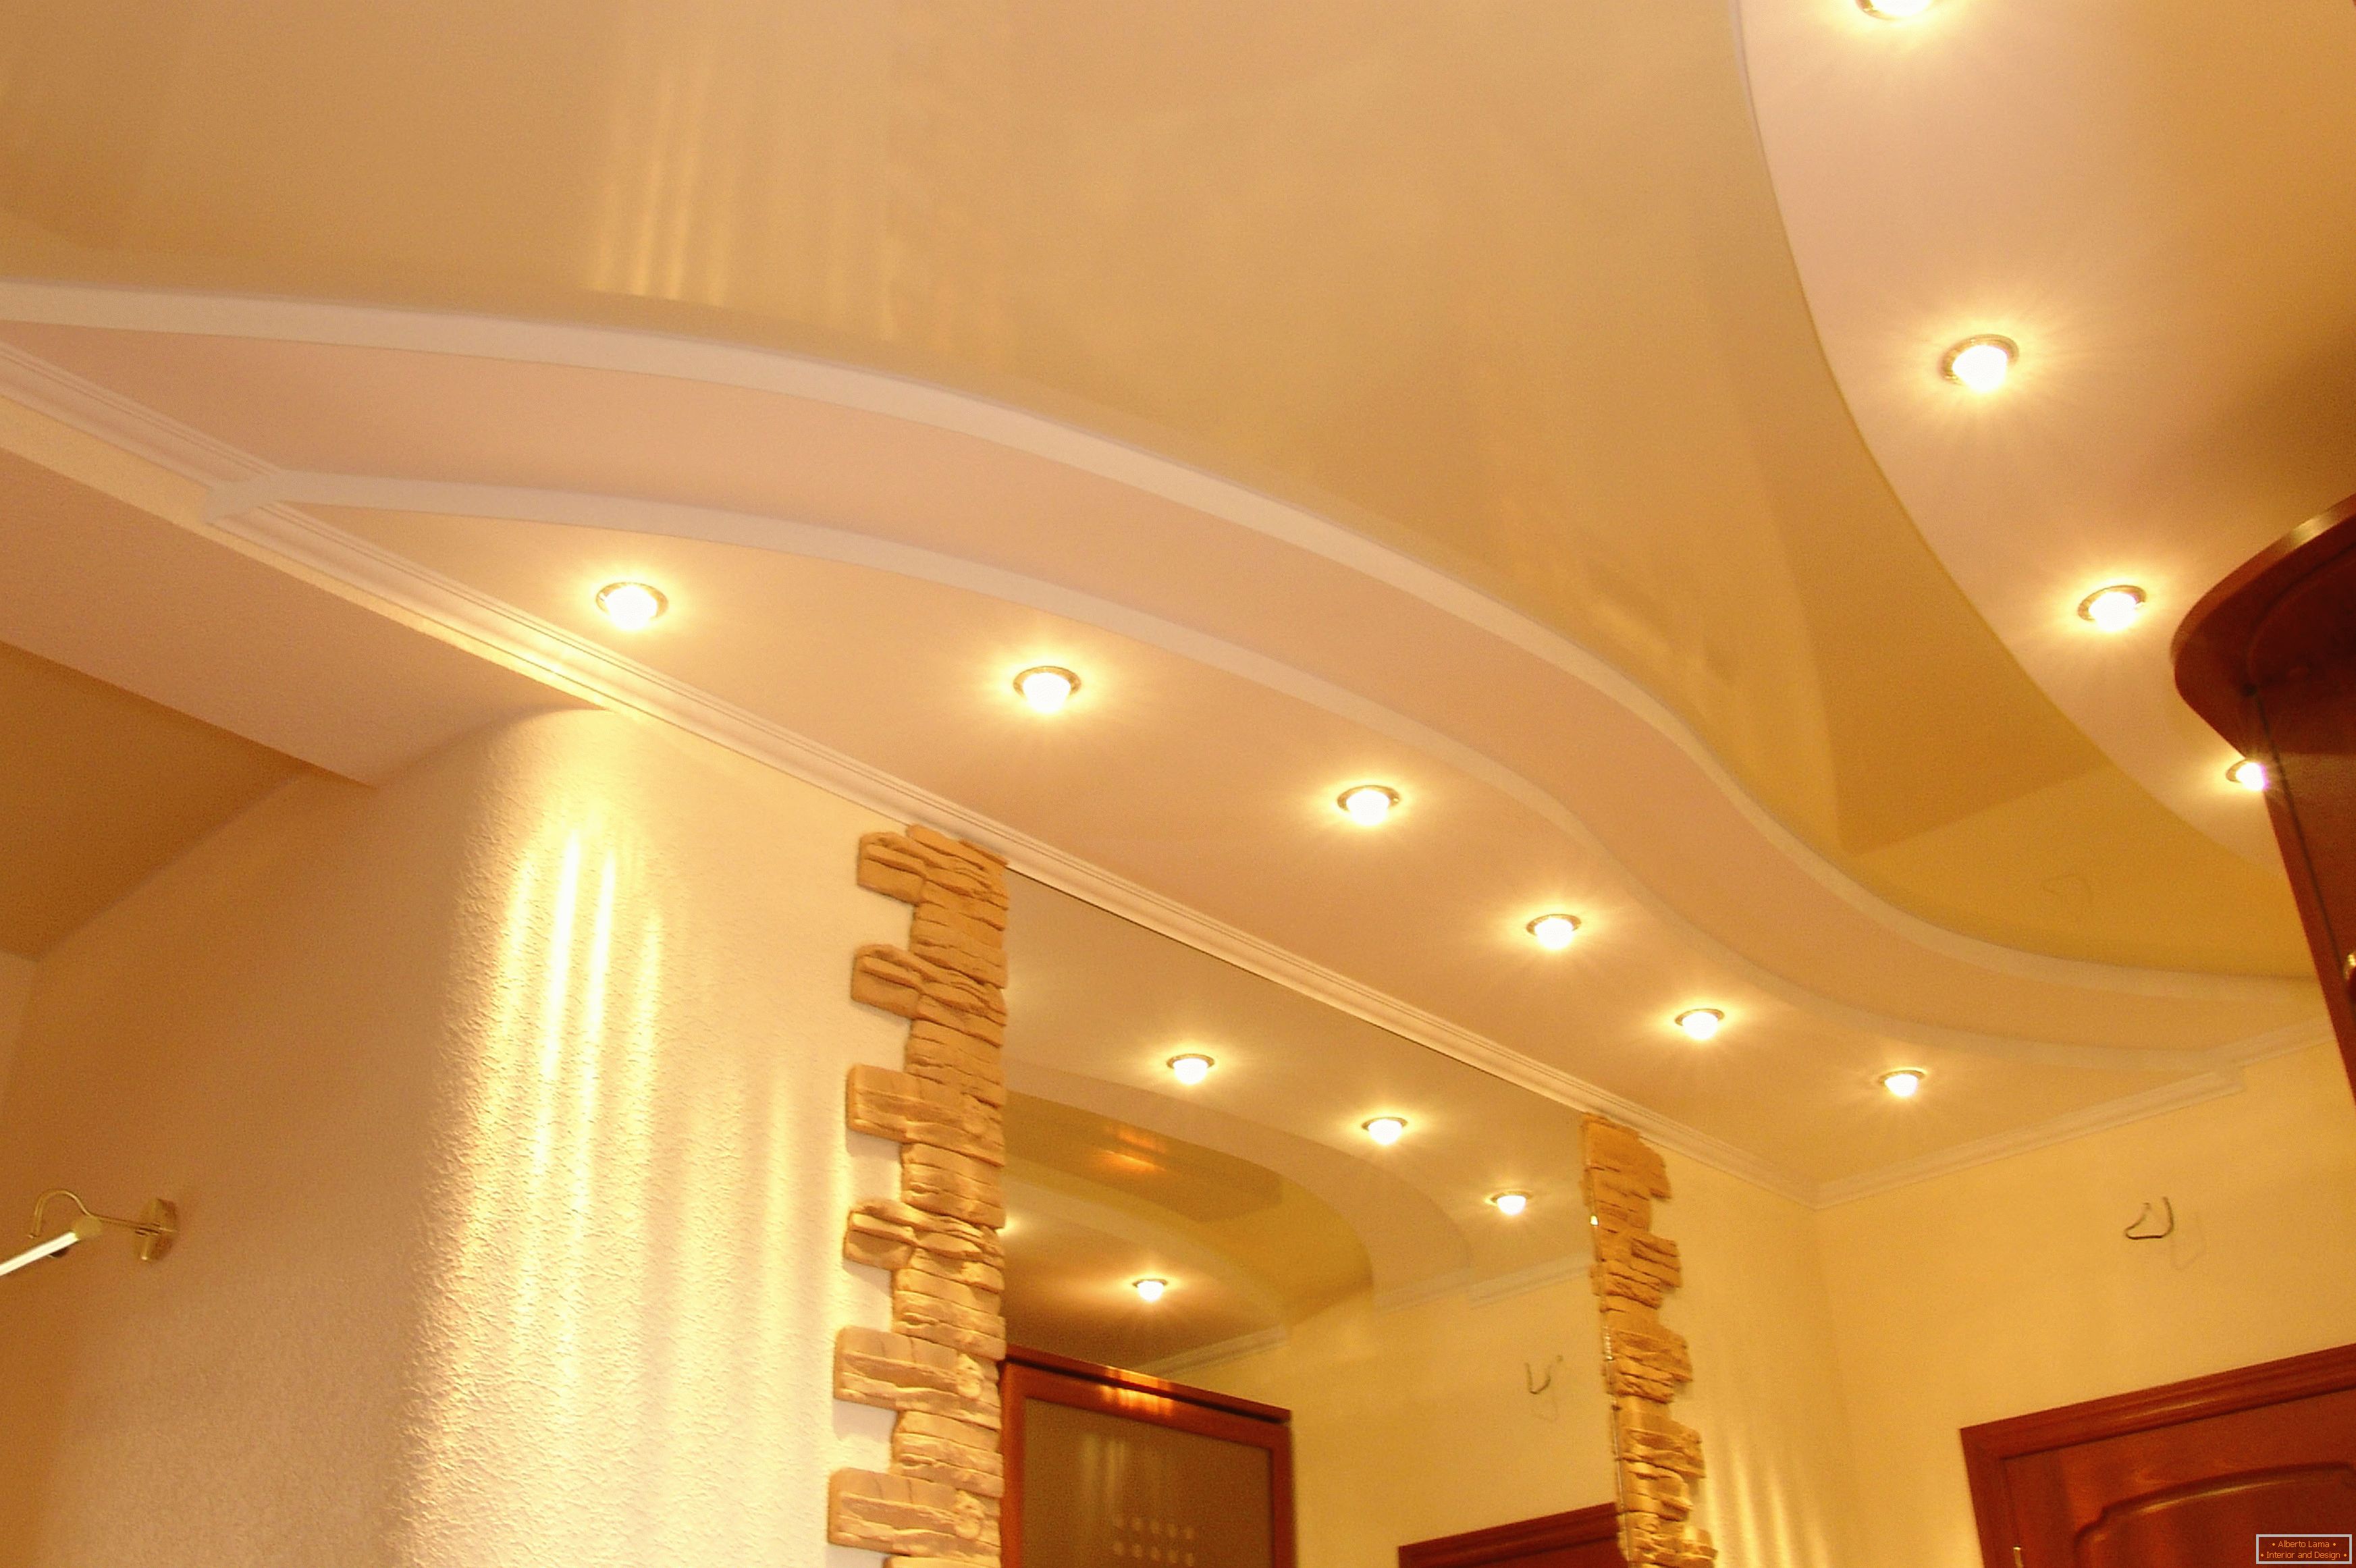 Soffitto decorato correttamente nel corridoio. Punto di illuminazione - l'opzione più accettabile per soffitti tesi in PVC.